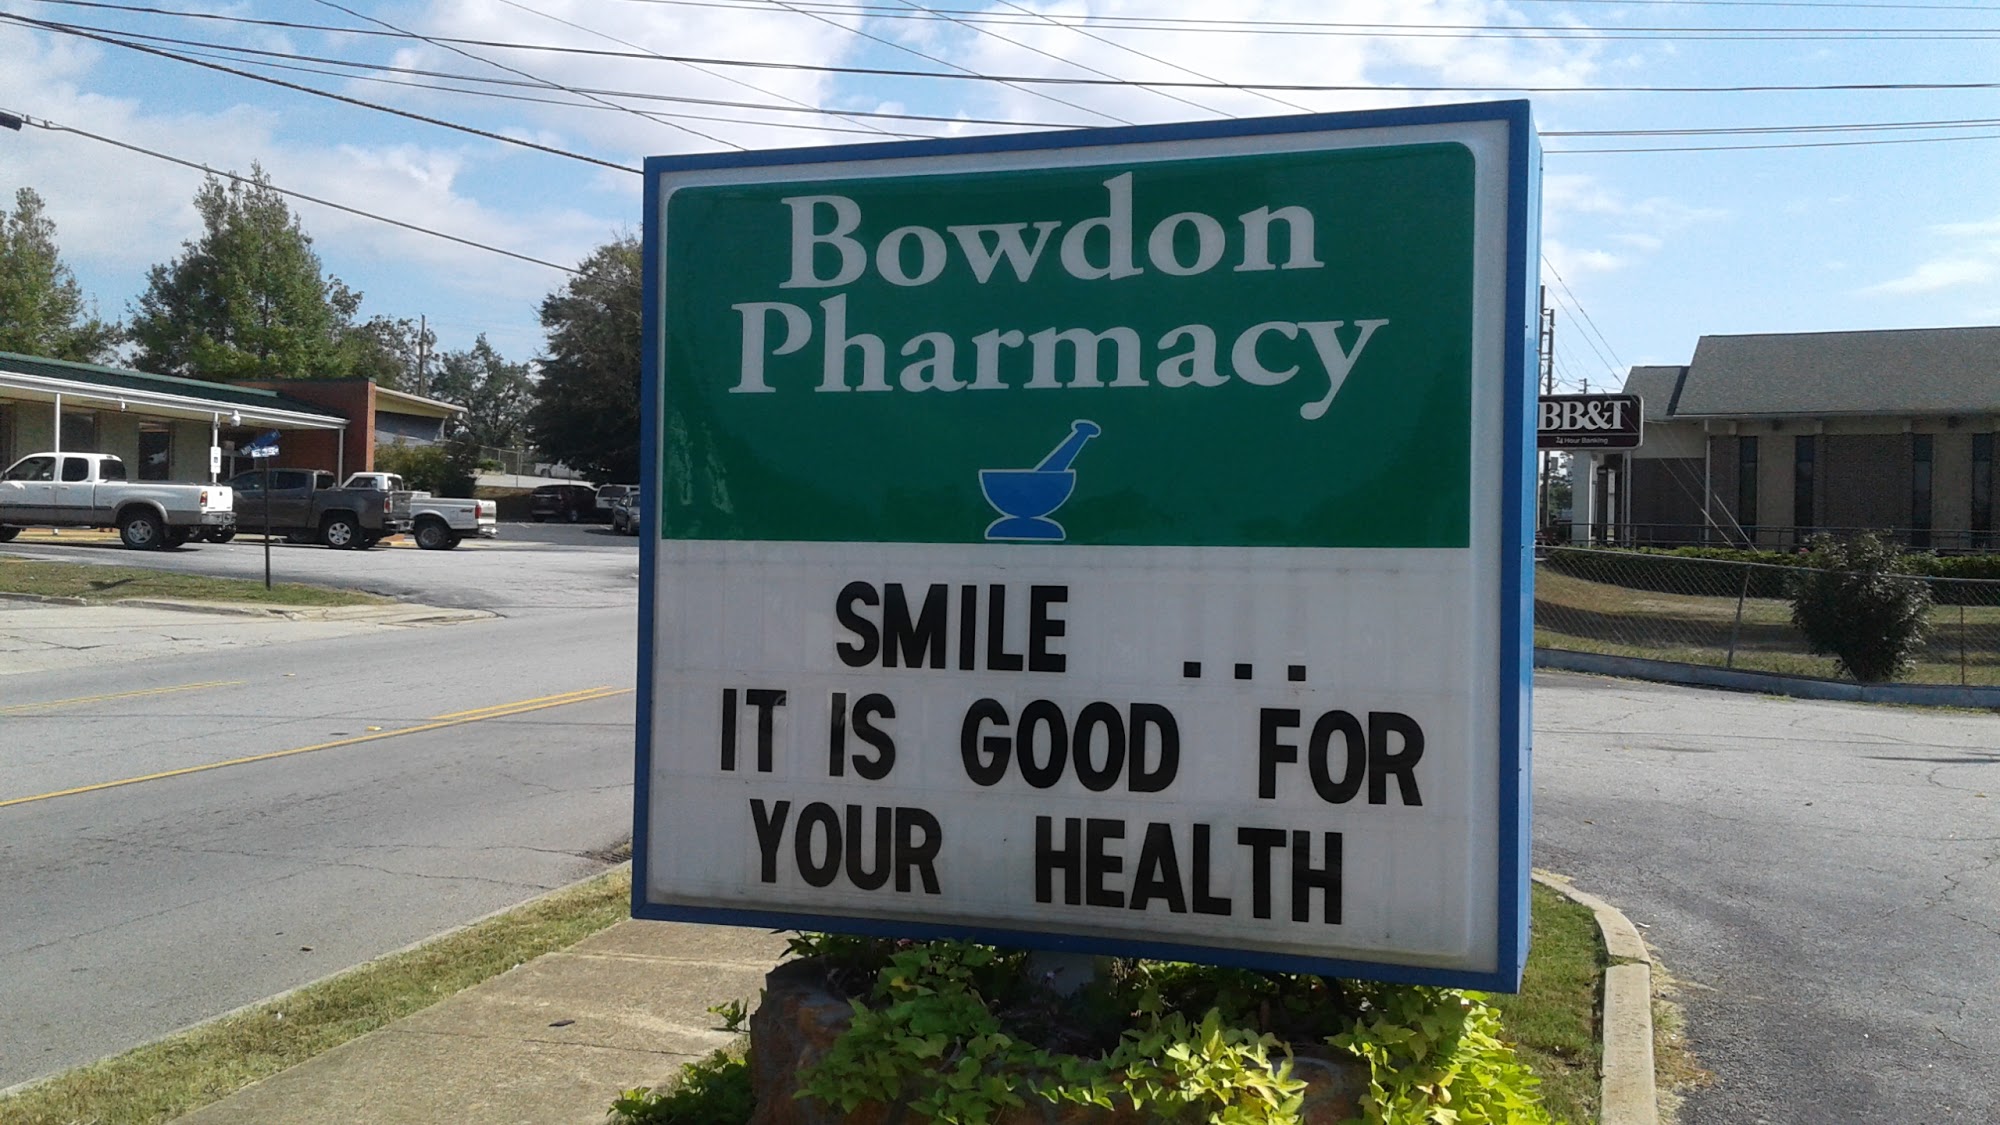 Bowdon Pharmacy